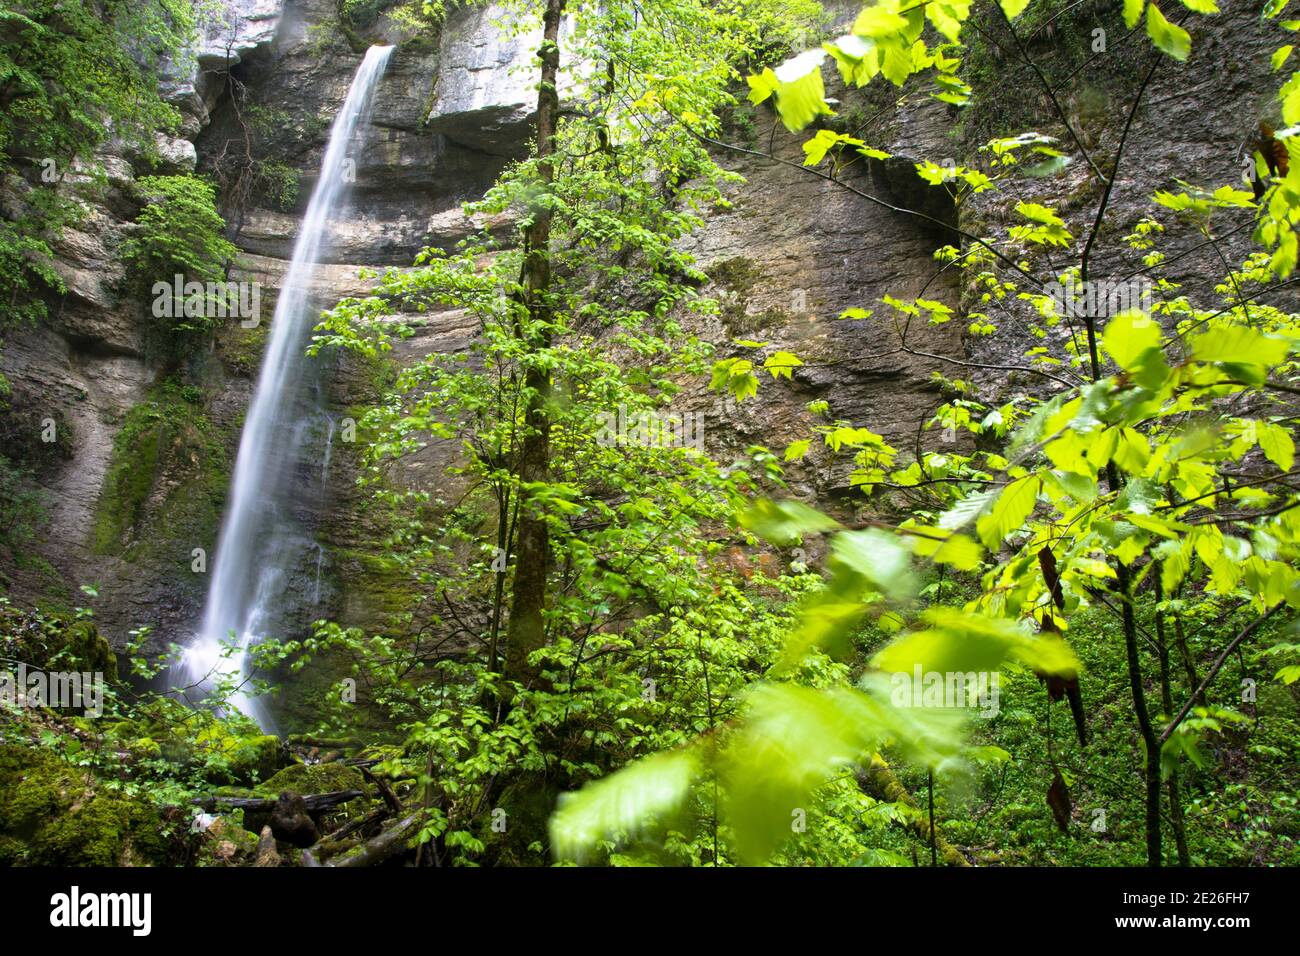 Der spektakuläre Wasserfall des Raffenot im französischen Jura Banque D'Images